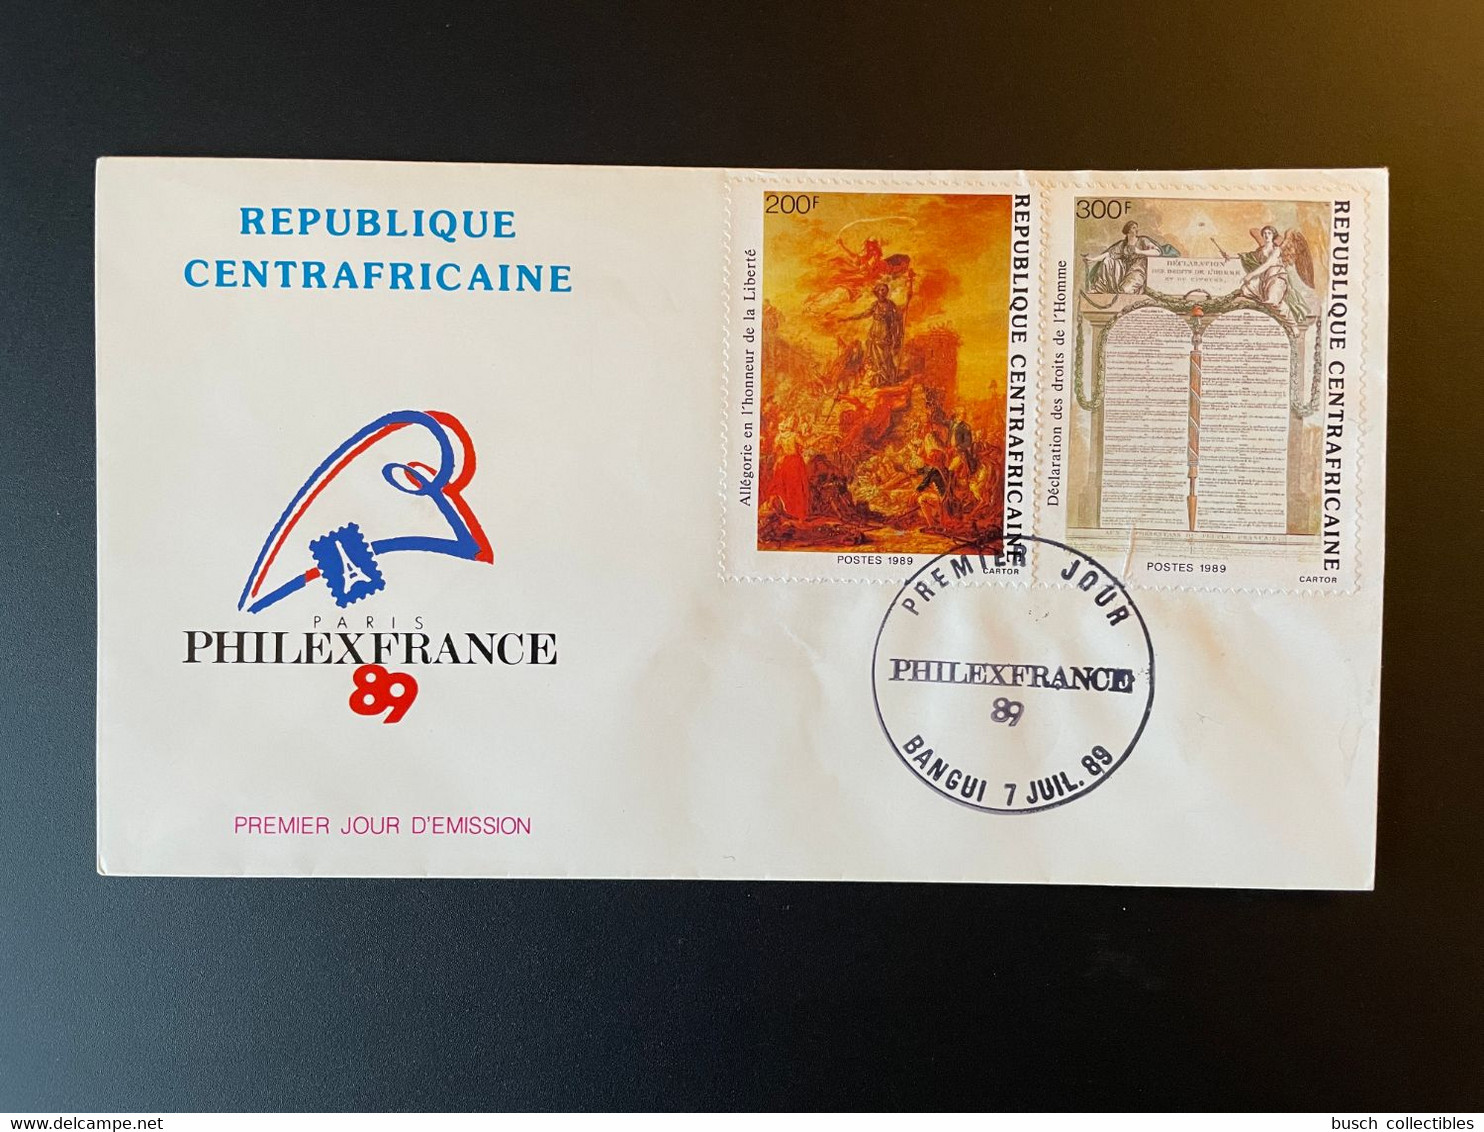 Centrafricaine 1989 Mi. 1368 - 1369 FDC 1er Jour Cover PhilexFrance 89 Révolution Française French 1789 - Briefmarkenausstellungen